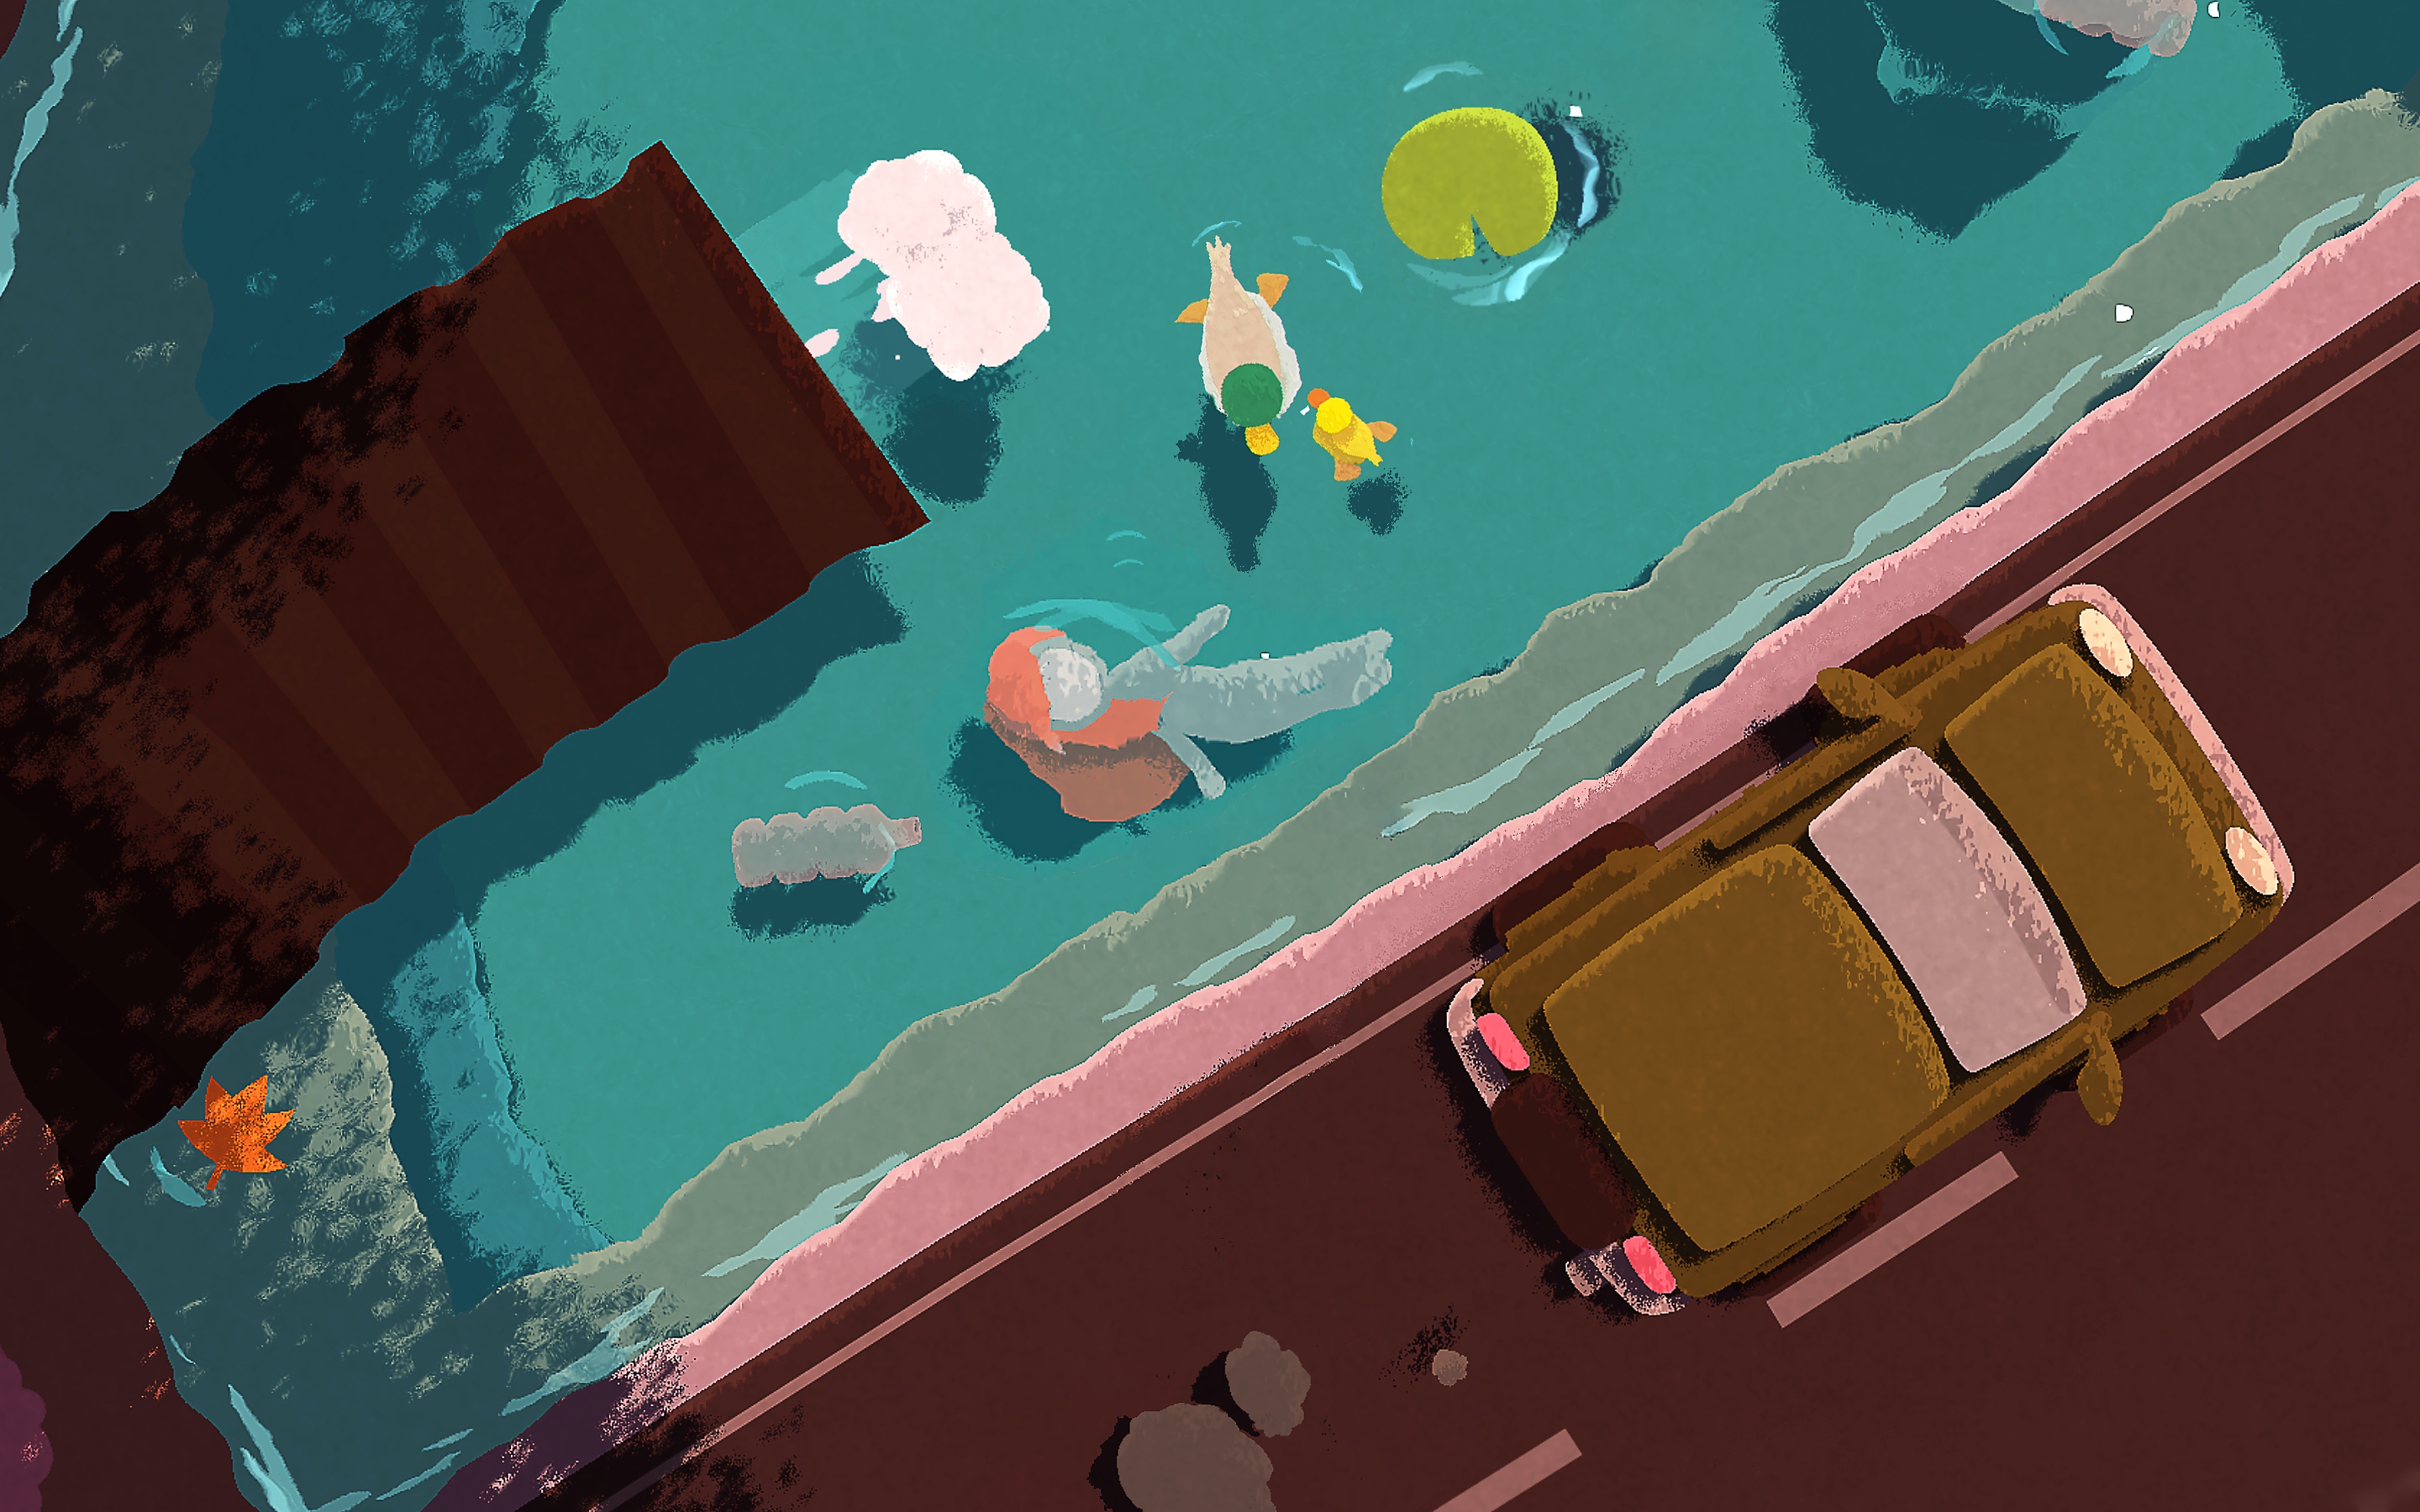 Naiad - Capture d'écran montrant un personnage nageant dans une rivière sous un pont emprunté par des voitures